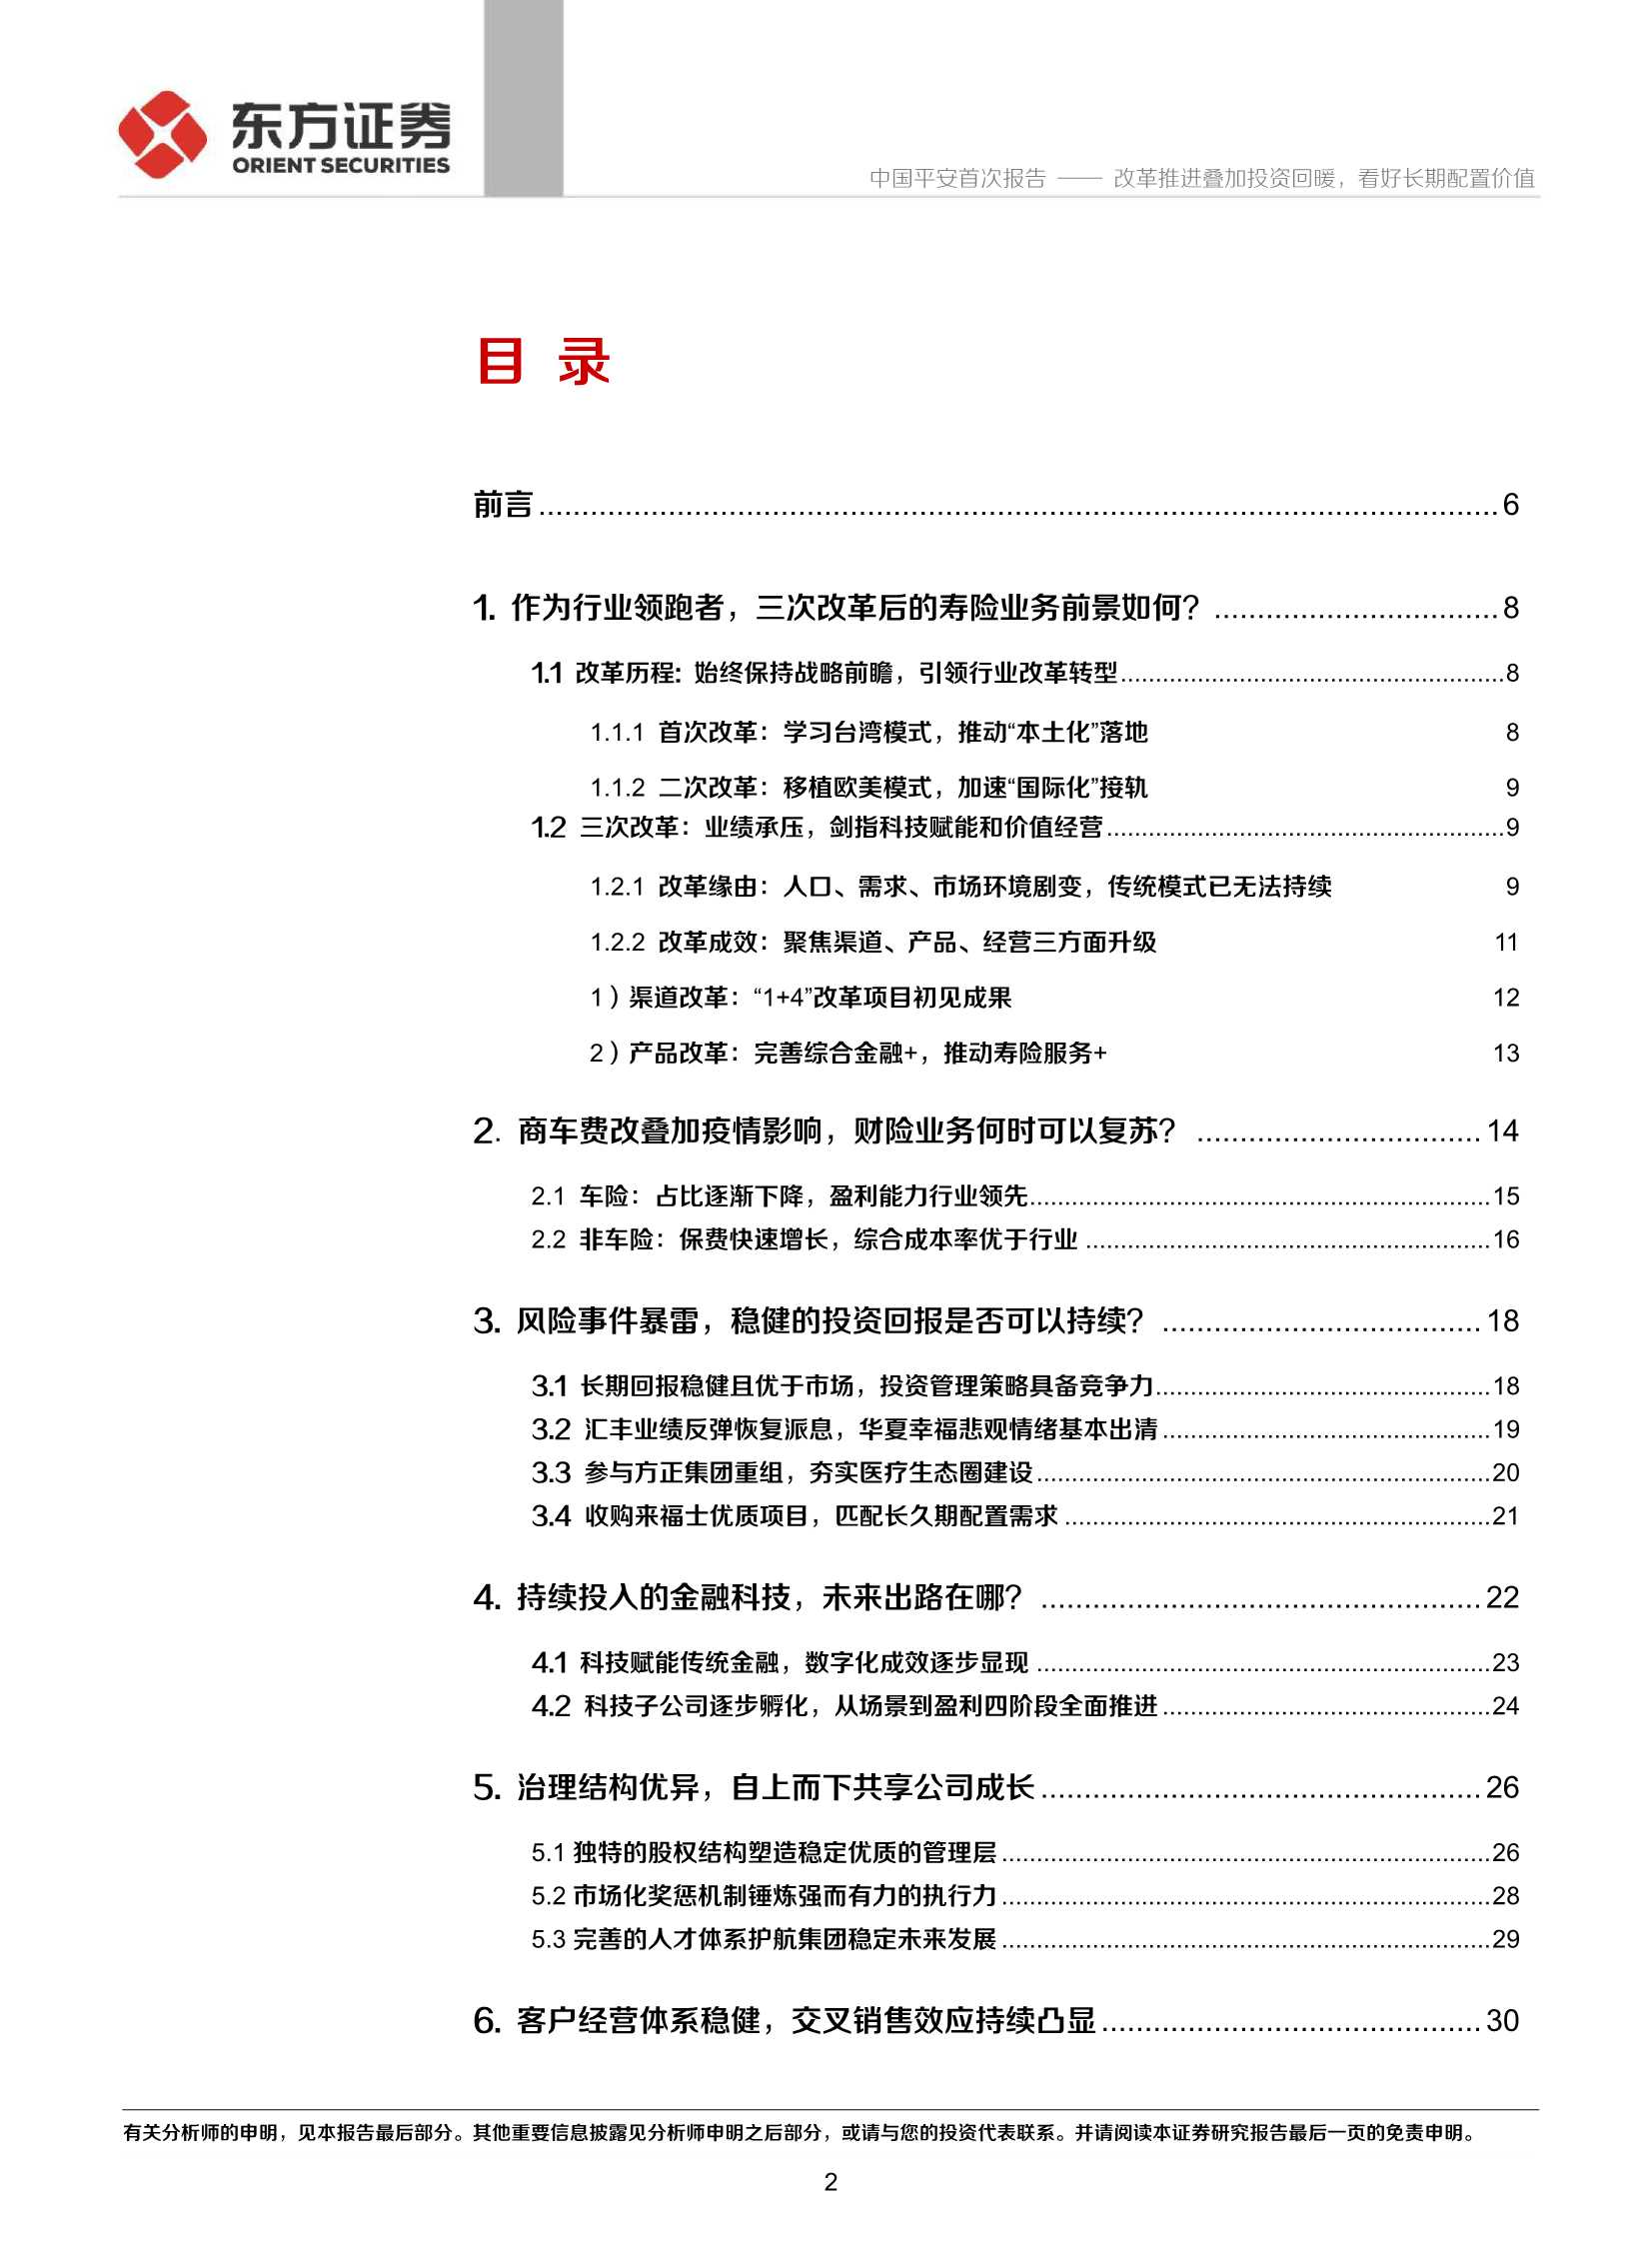 东方证券-中国平安-2318.HK-首次覆盖报告：改革推进叠加投资回暖，看好长期配置价值-20211230-41页